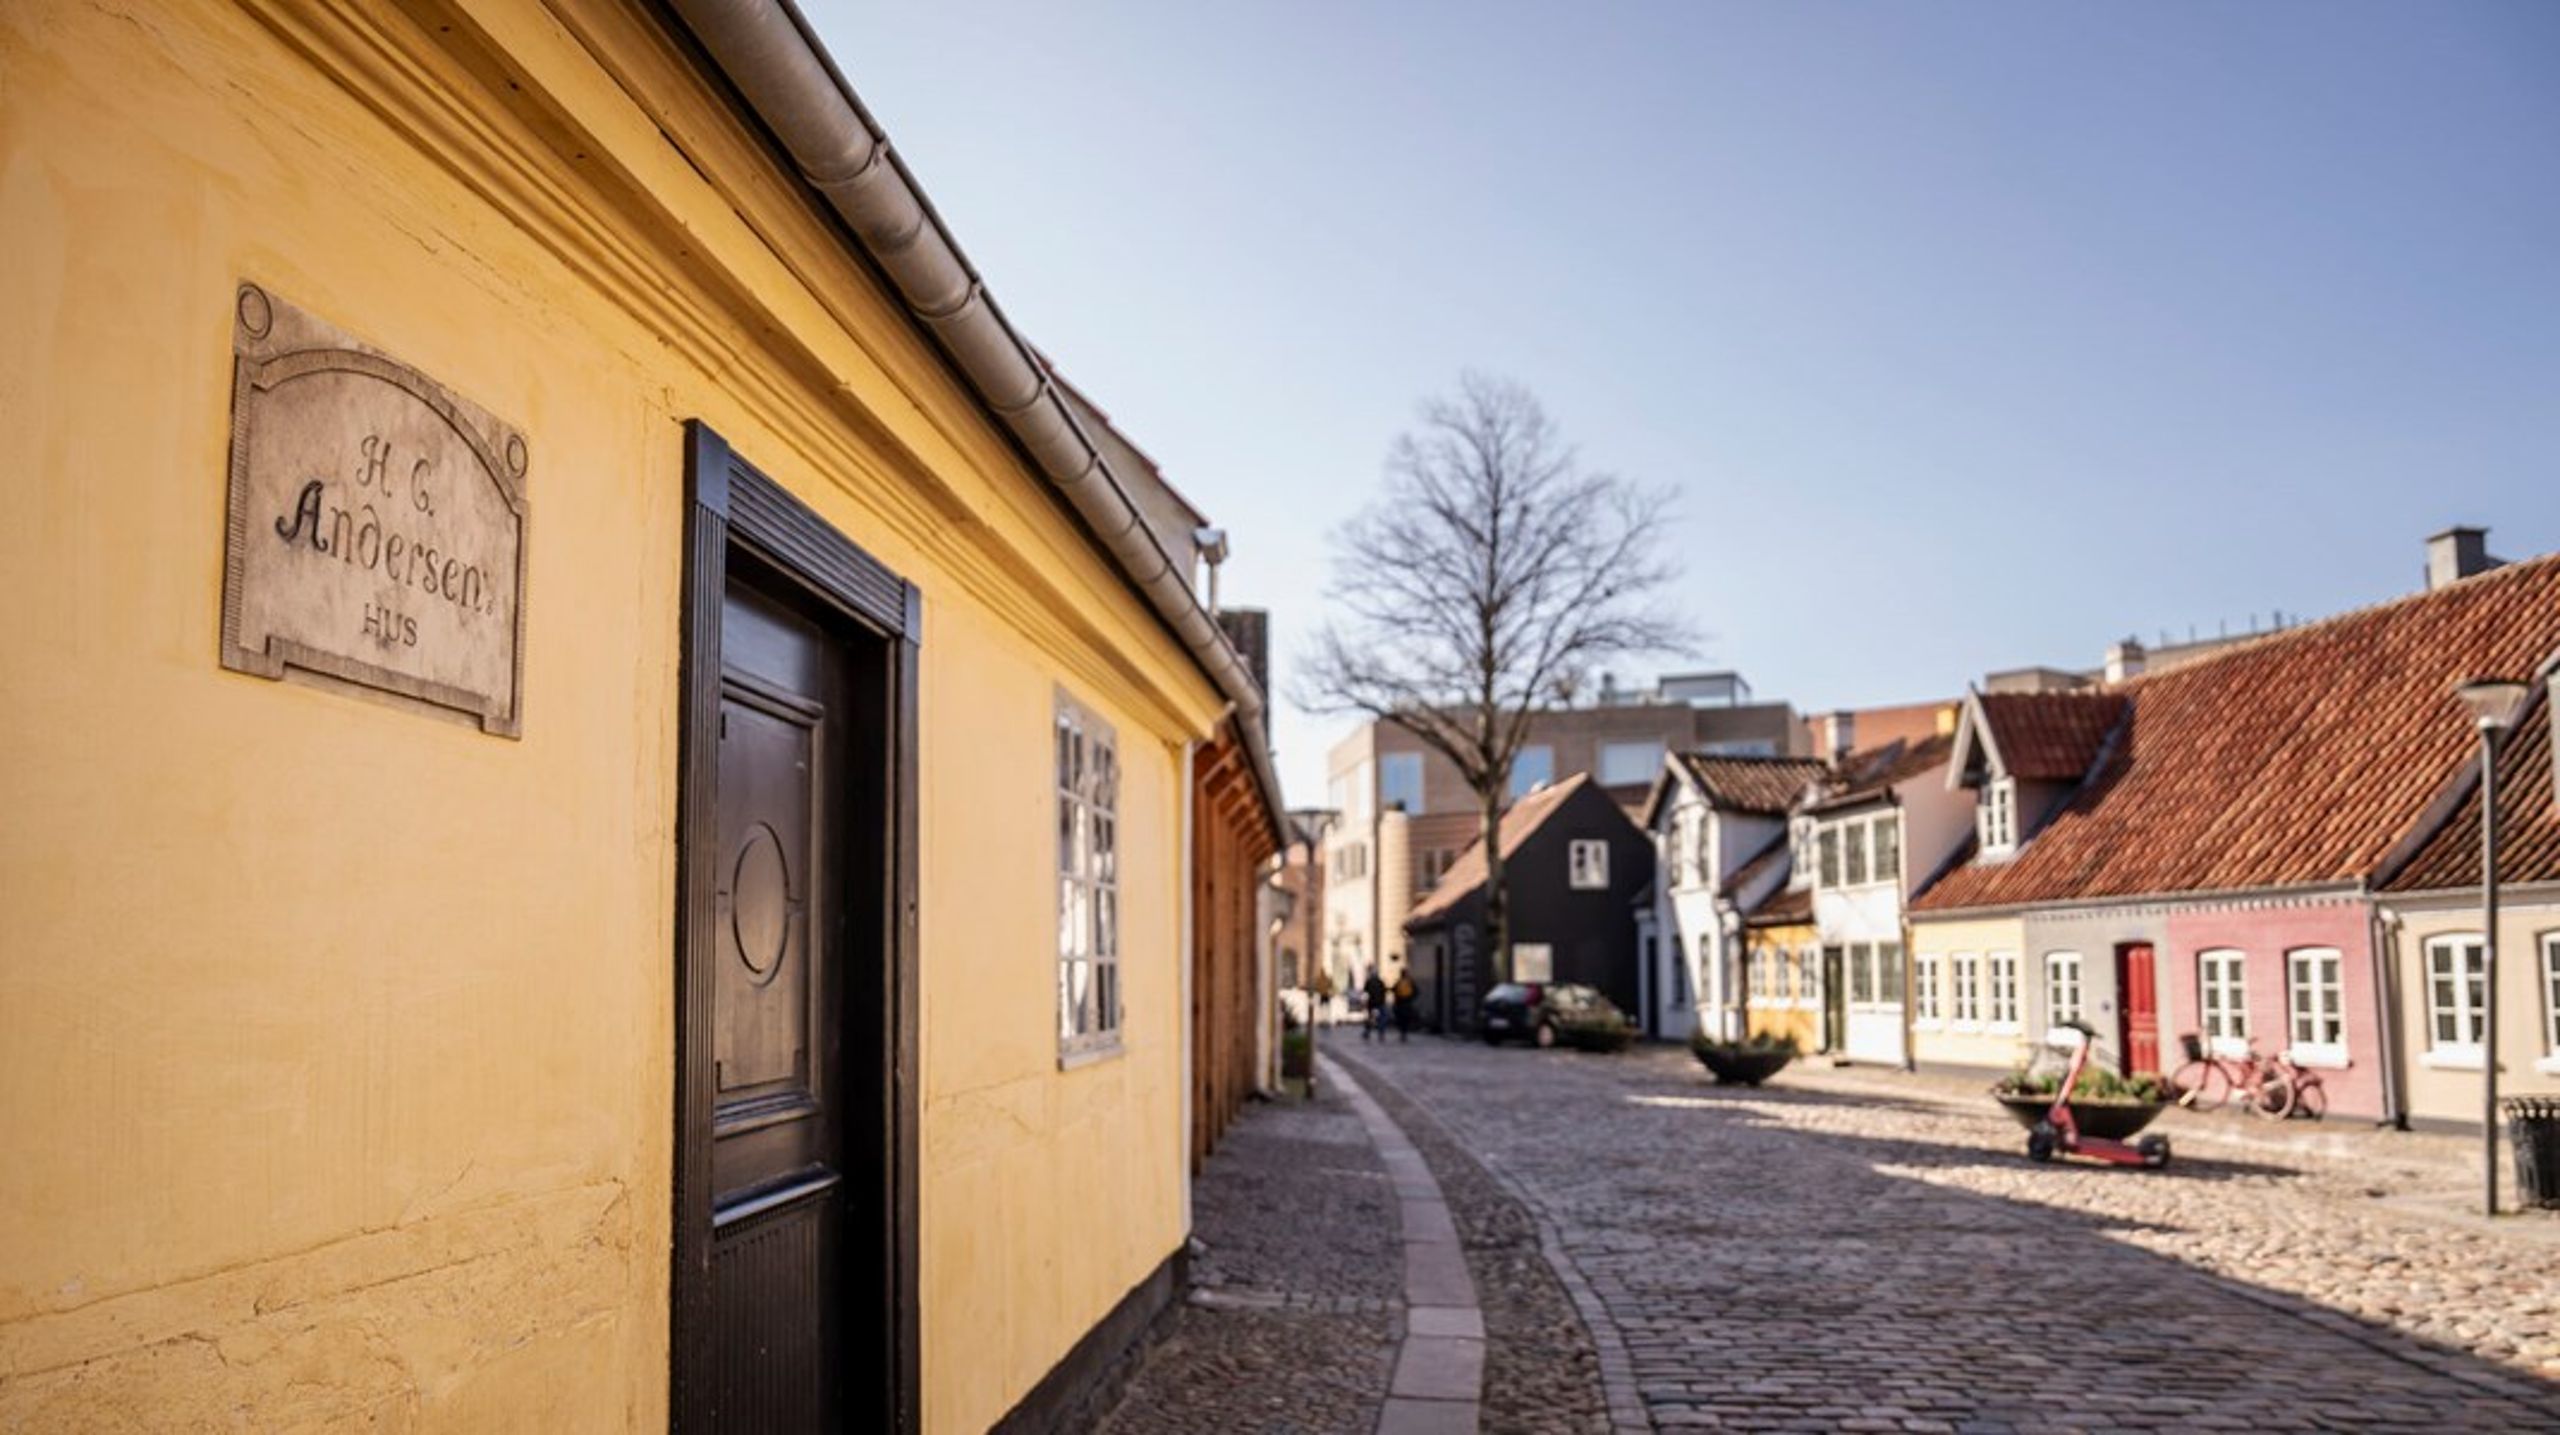 Hvordan kan det være, at Museum Odense, der fortæller historien om Danmarks mest berømte digter, er blevet bedømt som værende udelukkende af national interesse, spørger Henrik Harnow og Ole Nielsen.